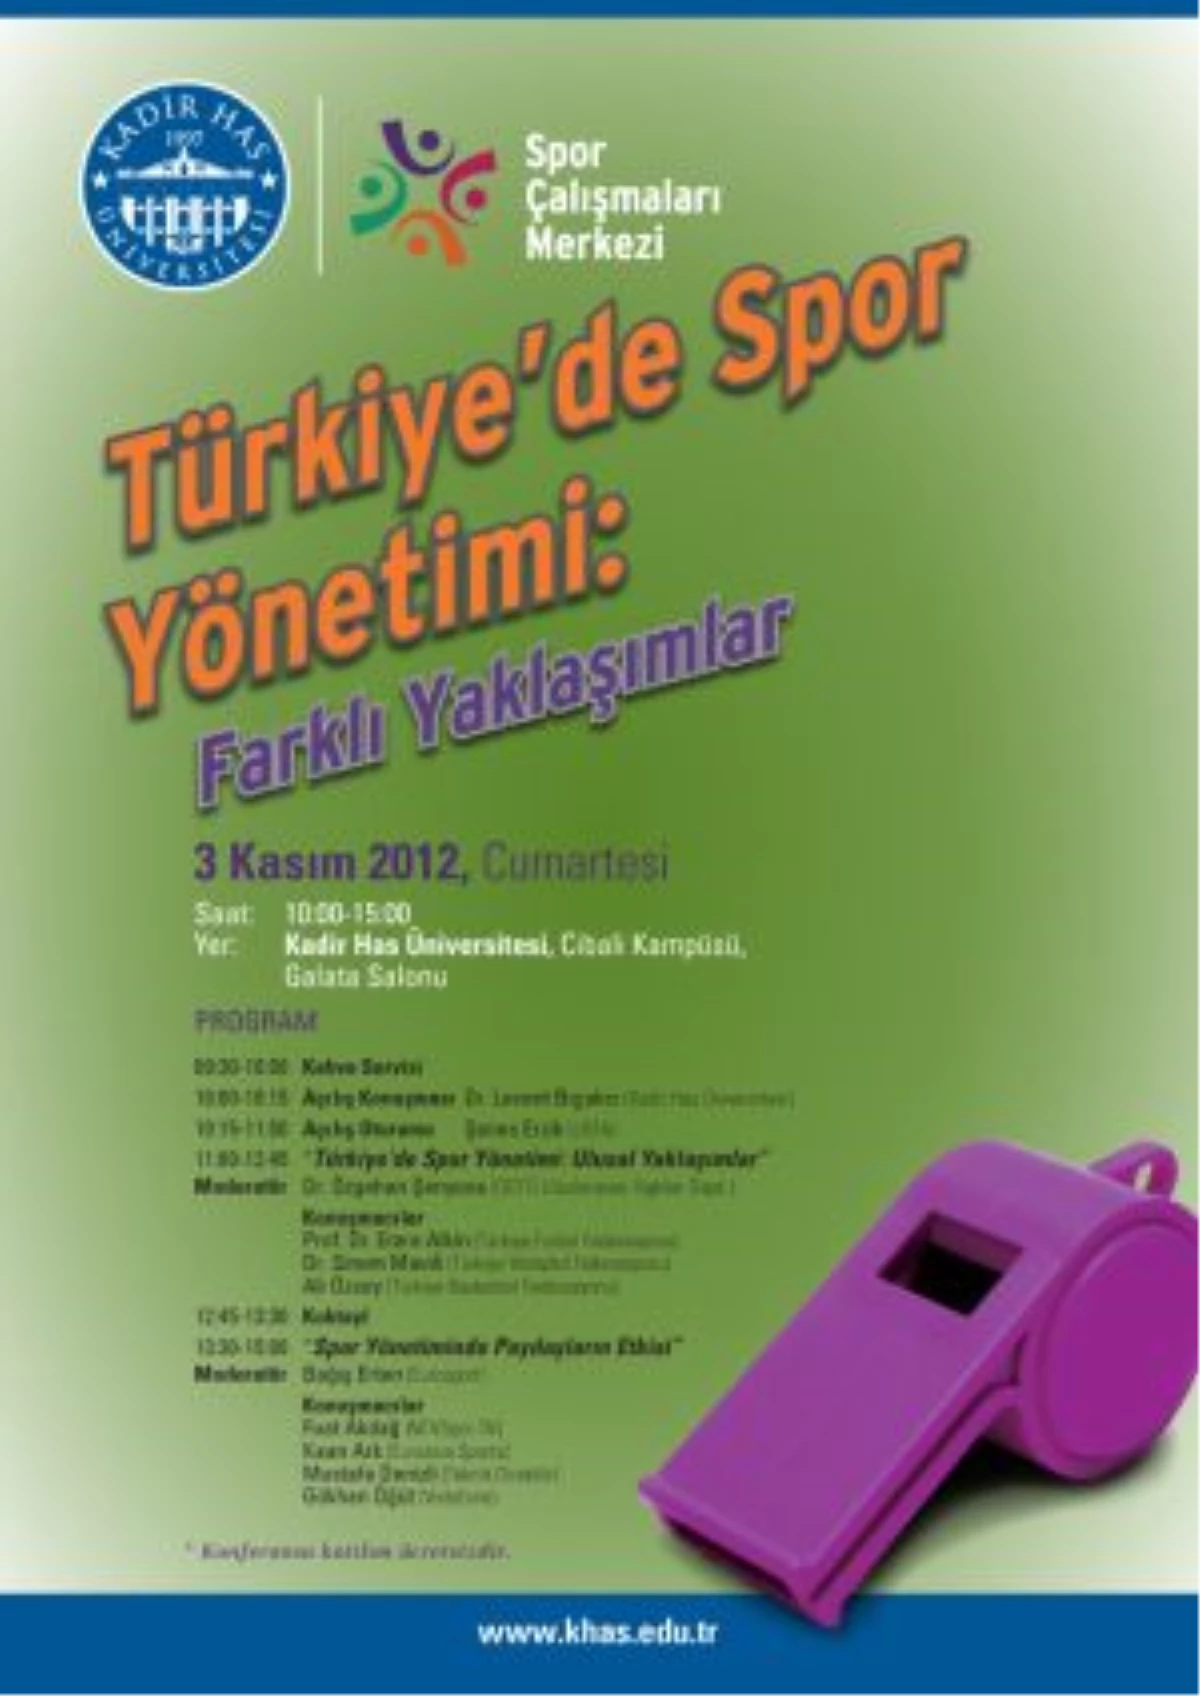 \'Türkiye\'de Spor Yönetimi: Farklı Yaklaşımlar\'